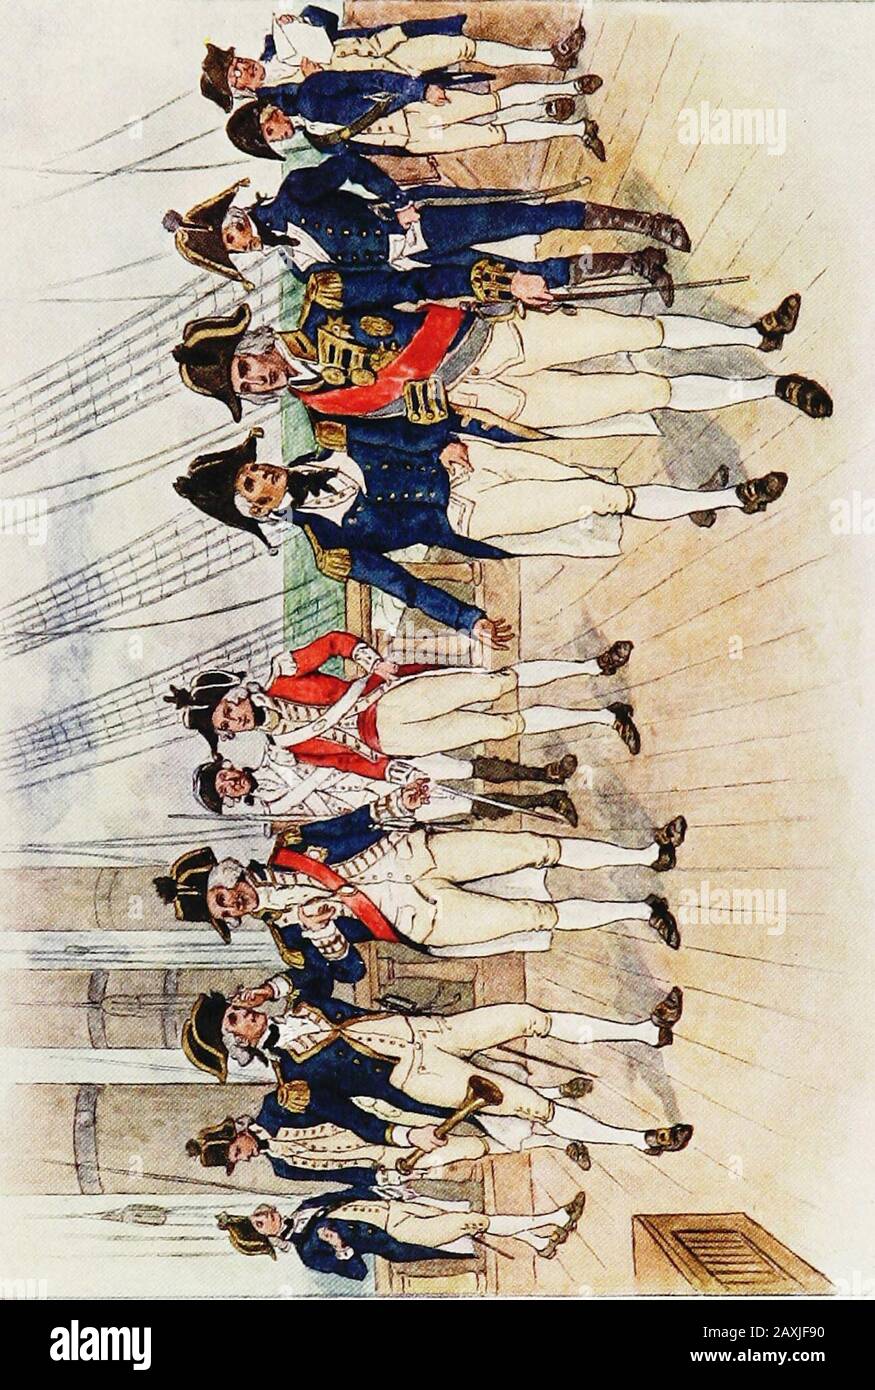 La Marina Real . con el vestido de los seamans de este tiempo buff y azul,  y por lo tanto podemos concluir que los tevictorios de Blake fueron ganados  por marineros vestidos